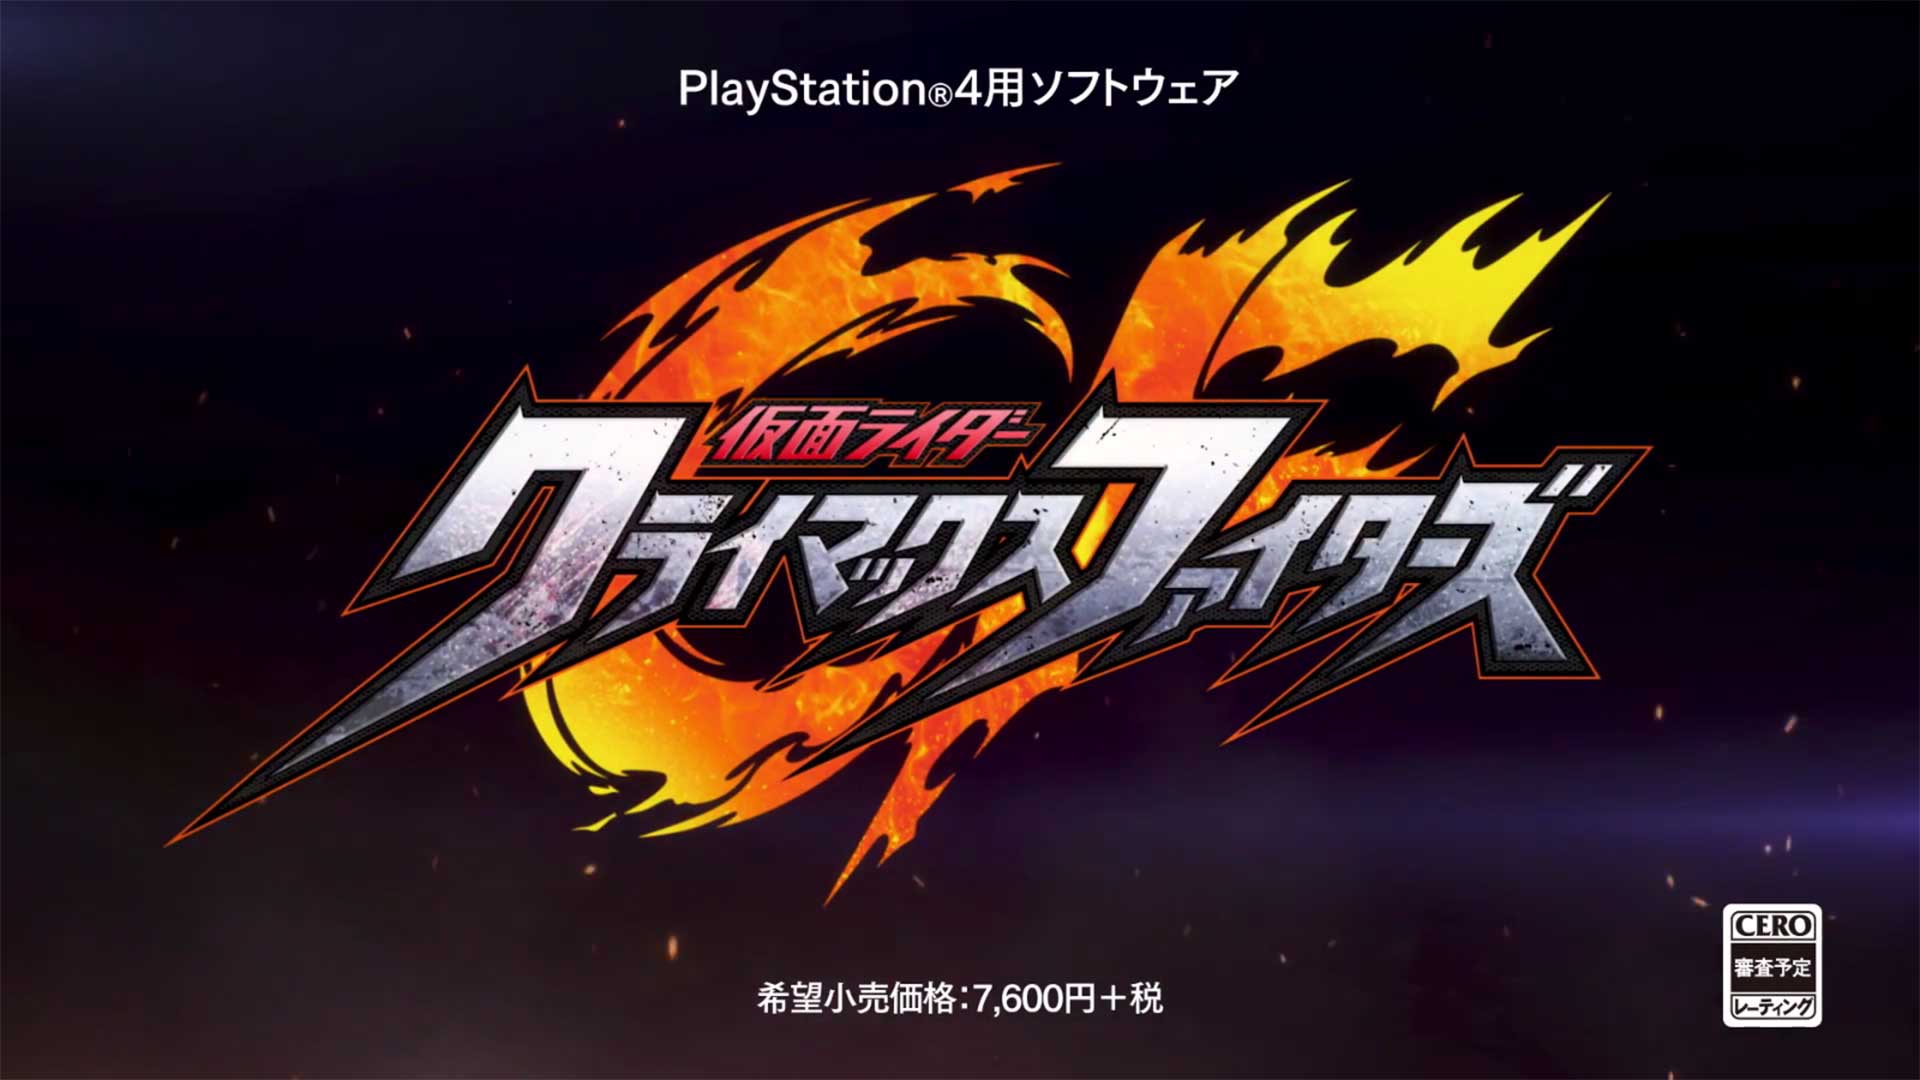 Nuovo trailer per Kamen Rider: Climax Fighters